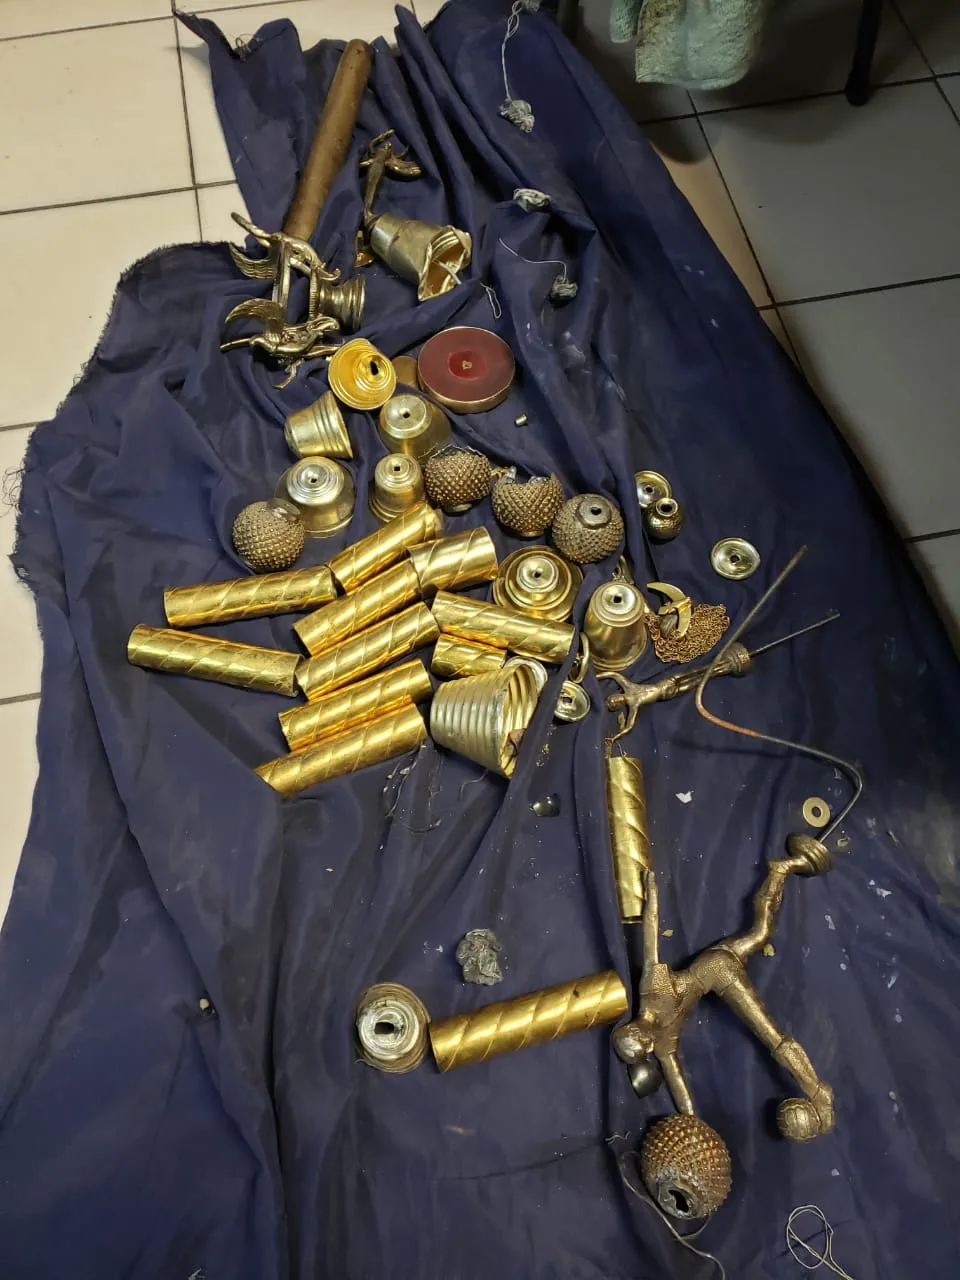 objetos robados en parroquia de Ciudad Hidalgo